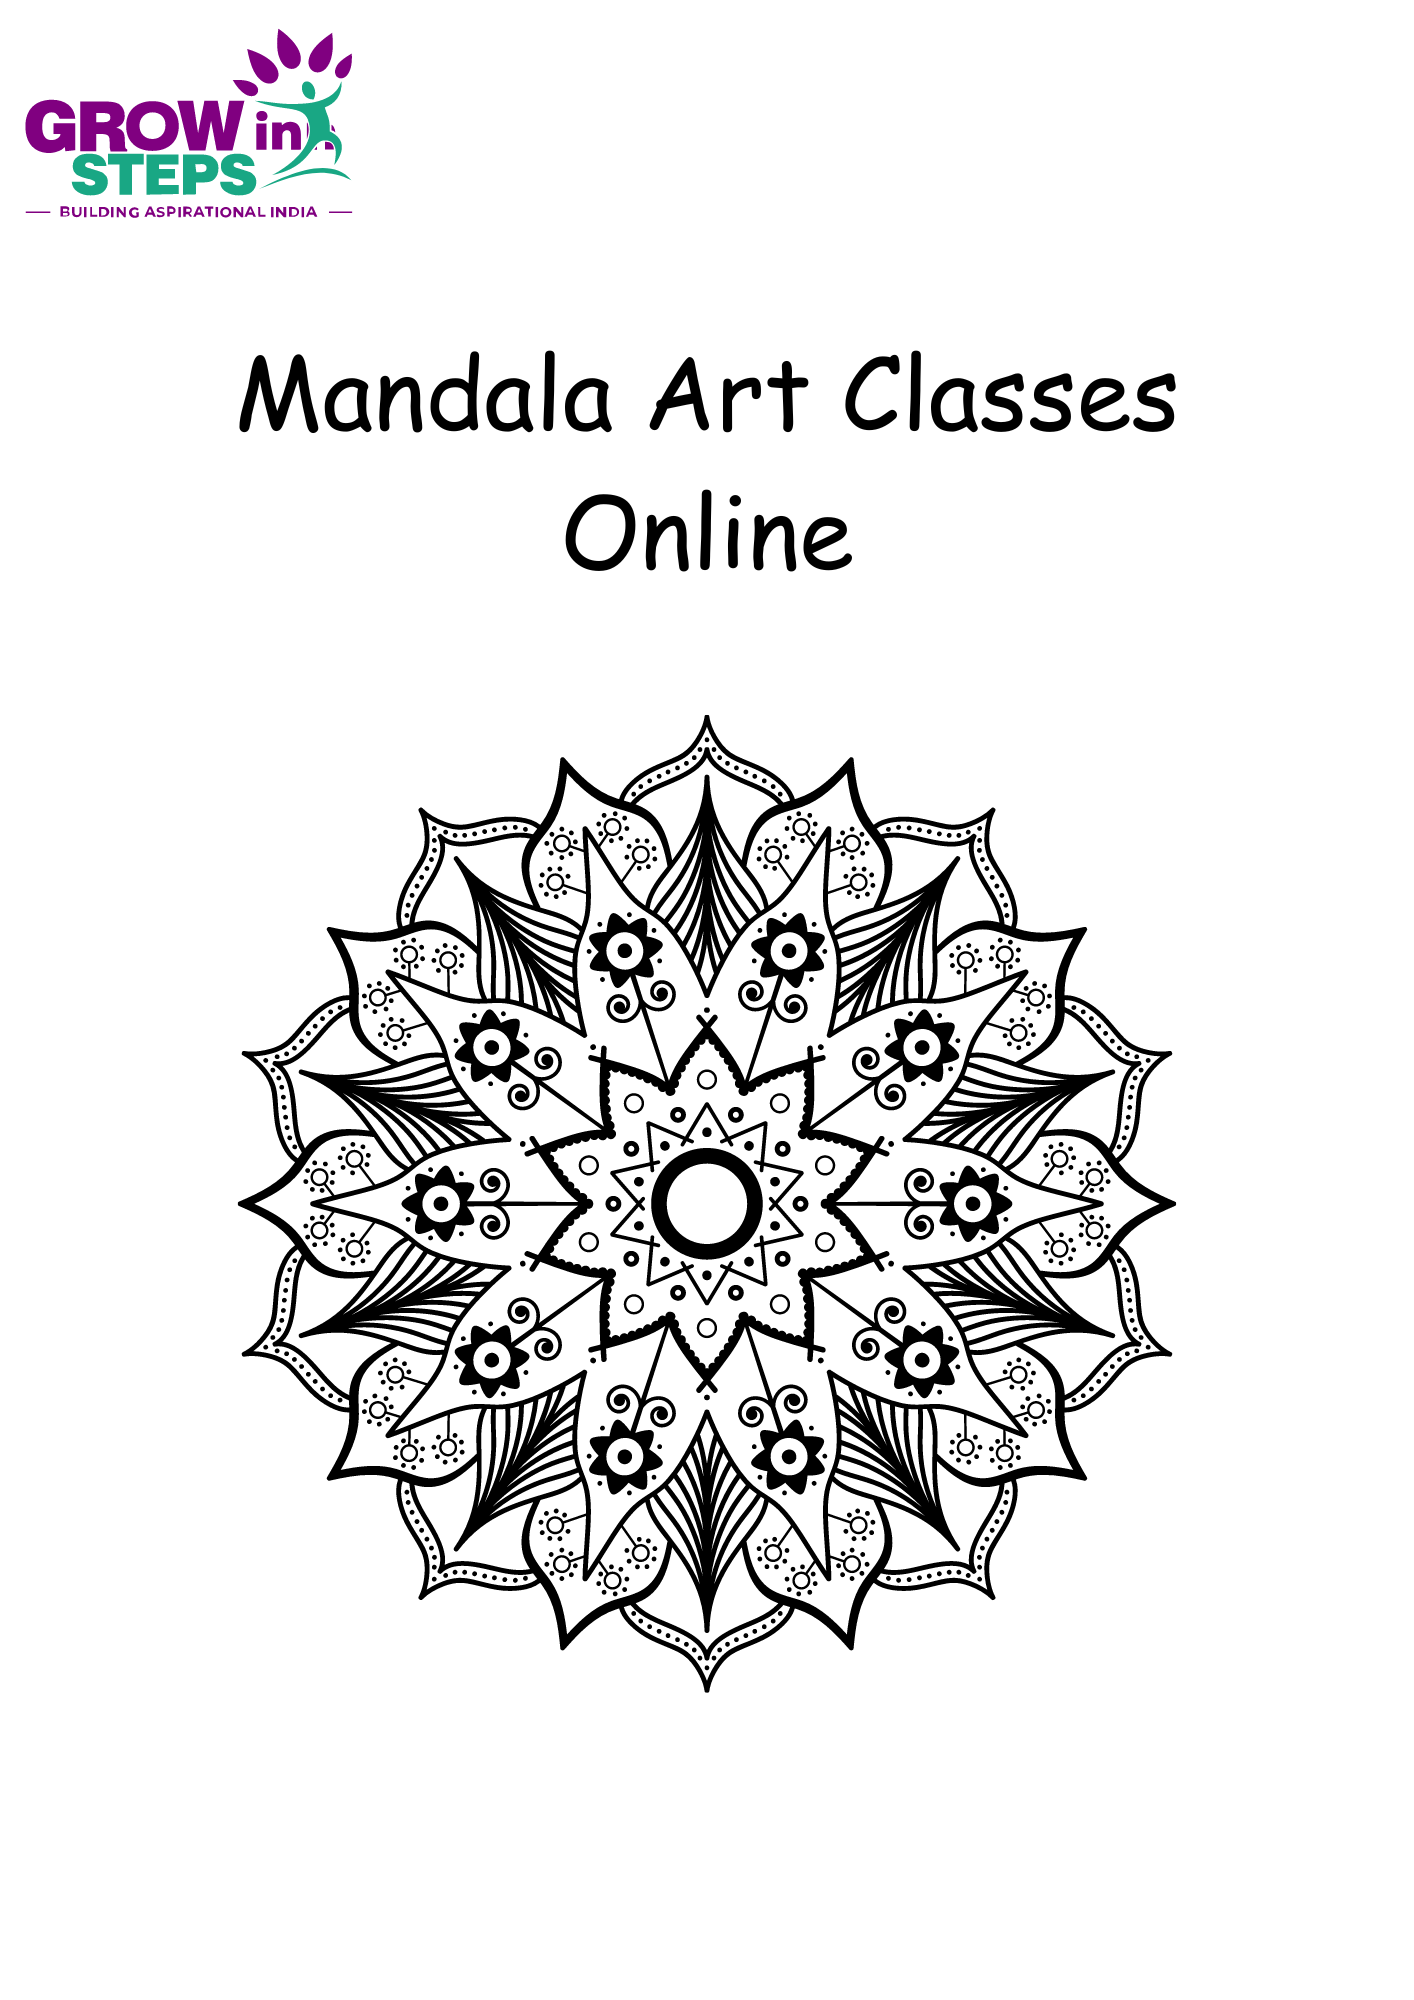 Beginner's guide to mandala art